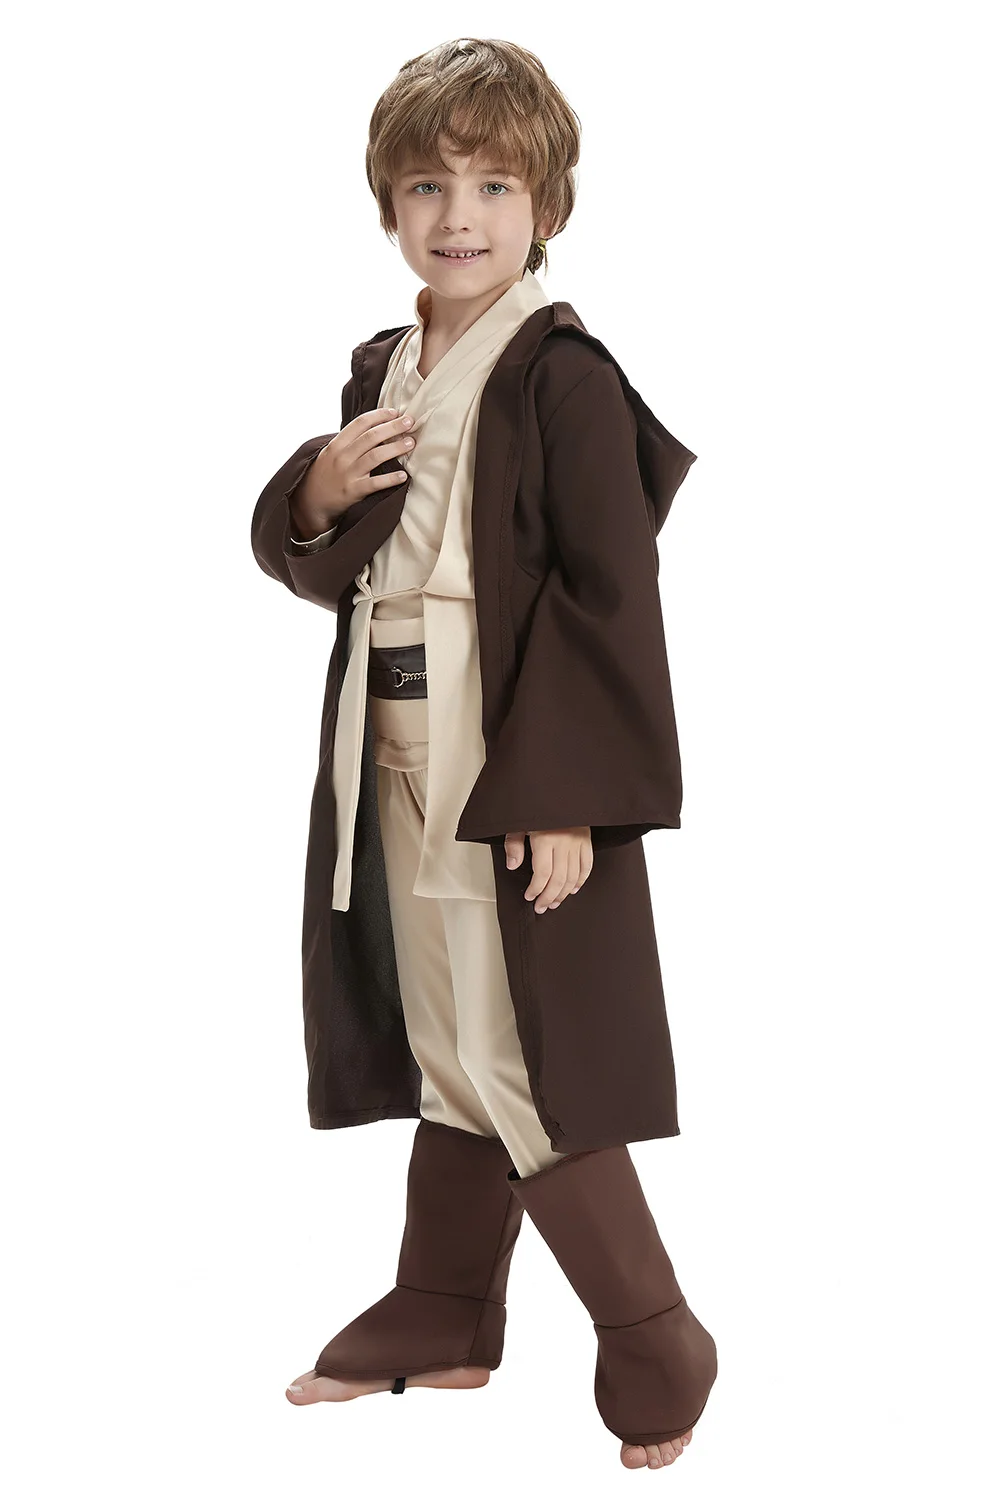 

Детский костюм для косплея рыцаря джедая, униформа Оби Ван Кеноби, костюм Анакина Скайуокера, Халат с капюшоном, накидка, наряды